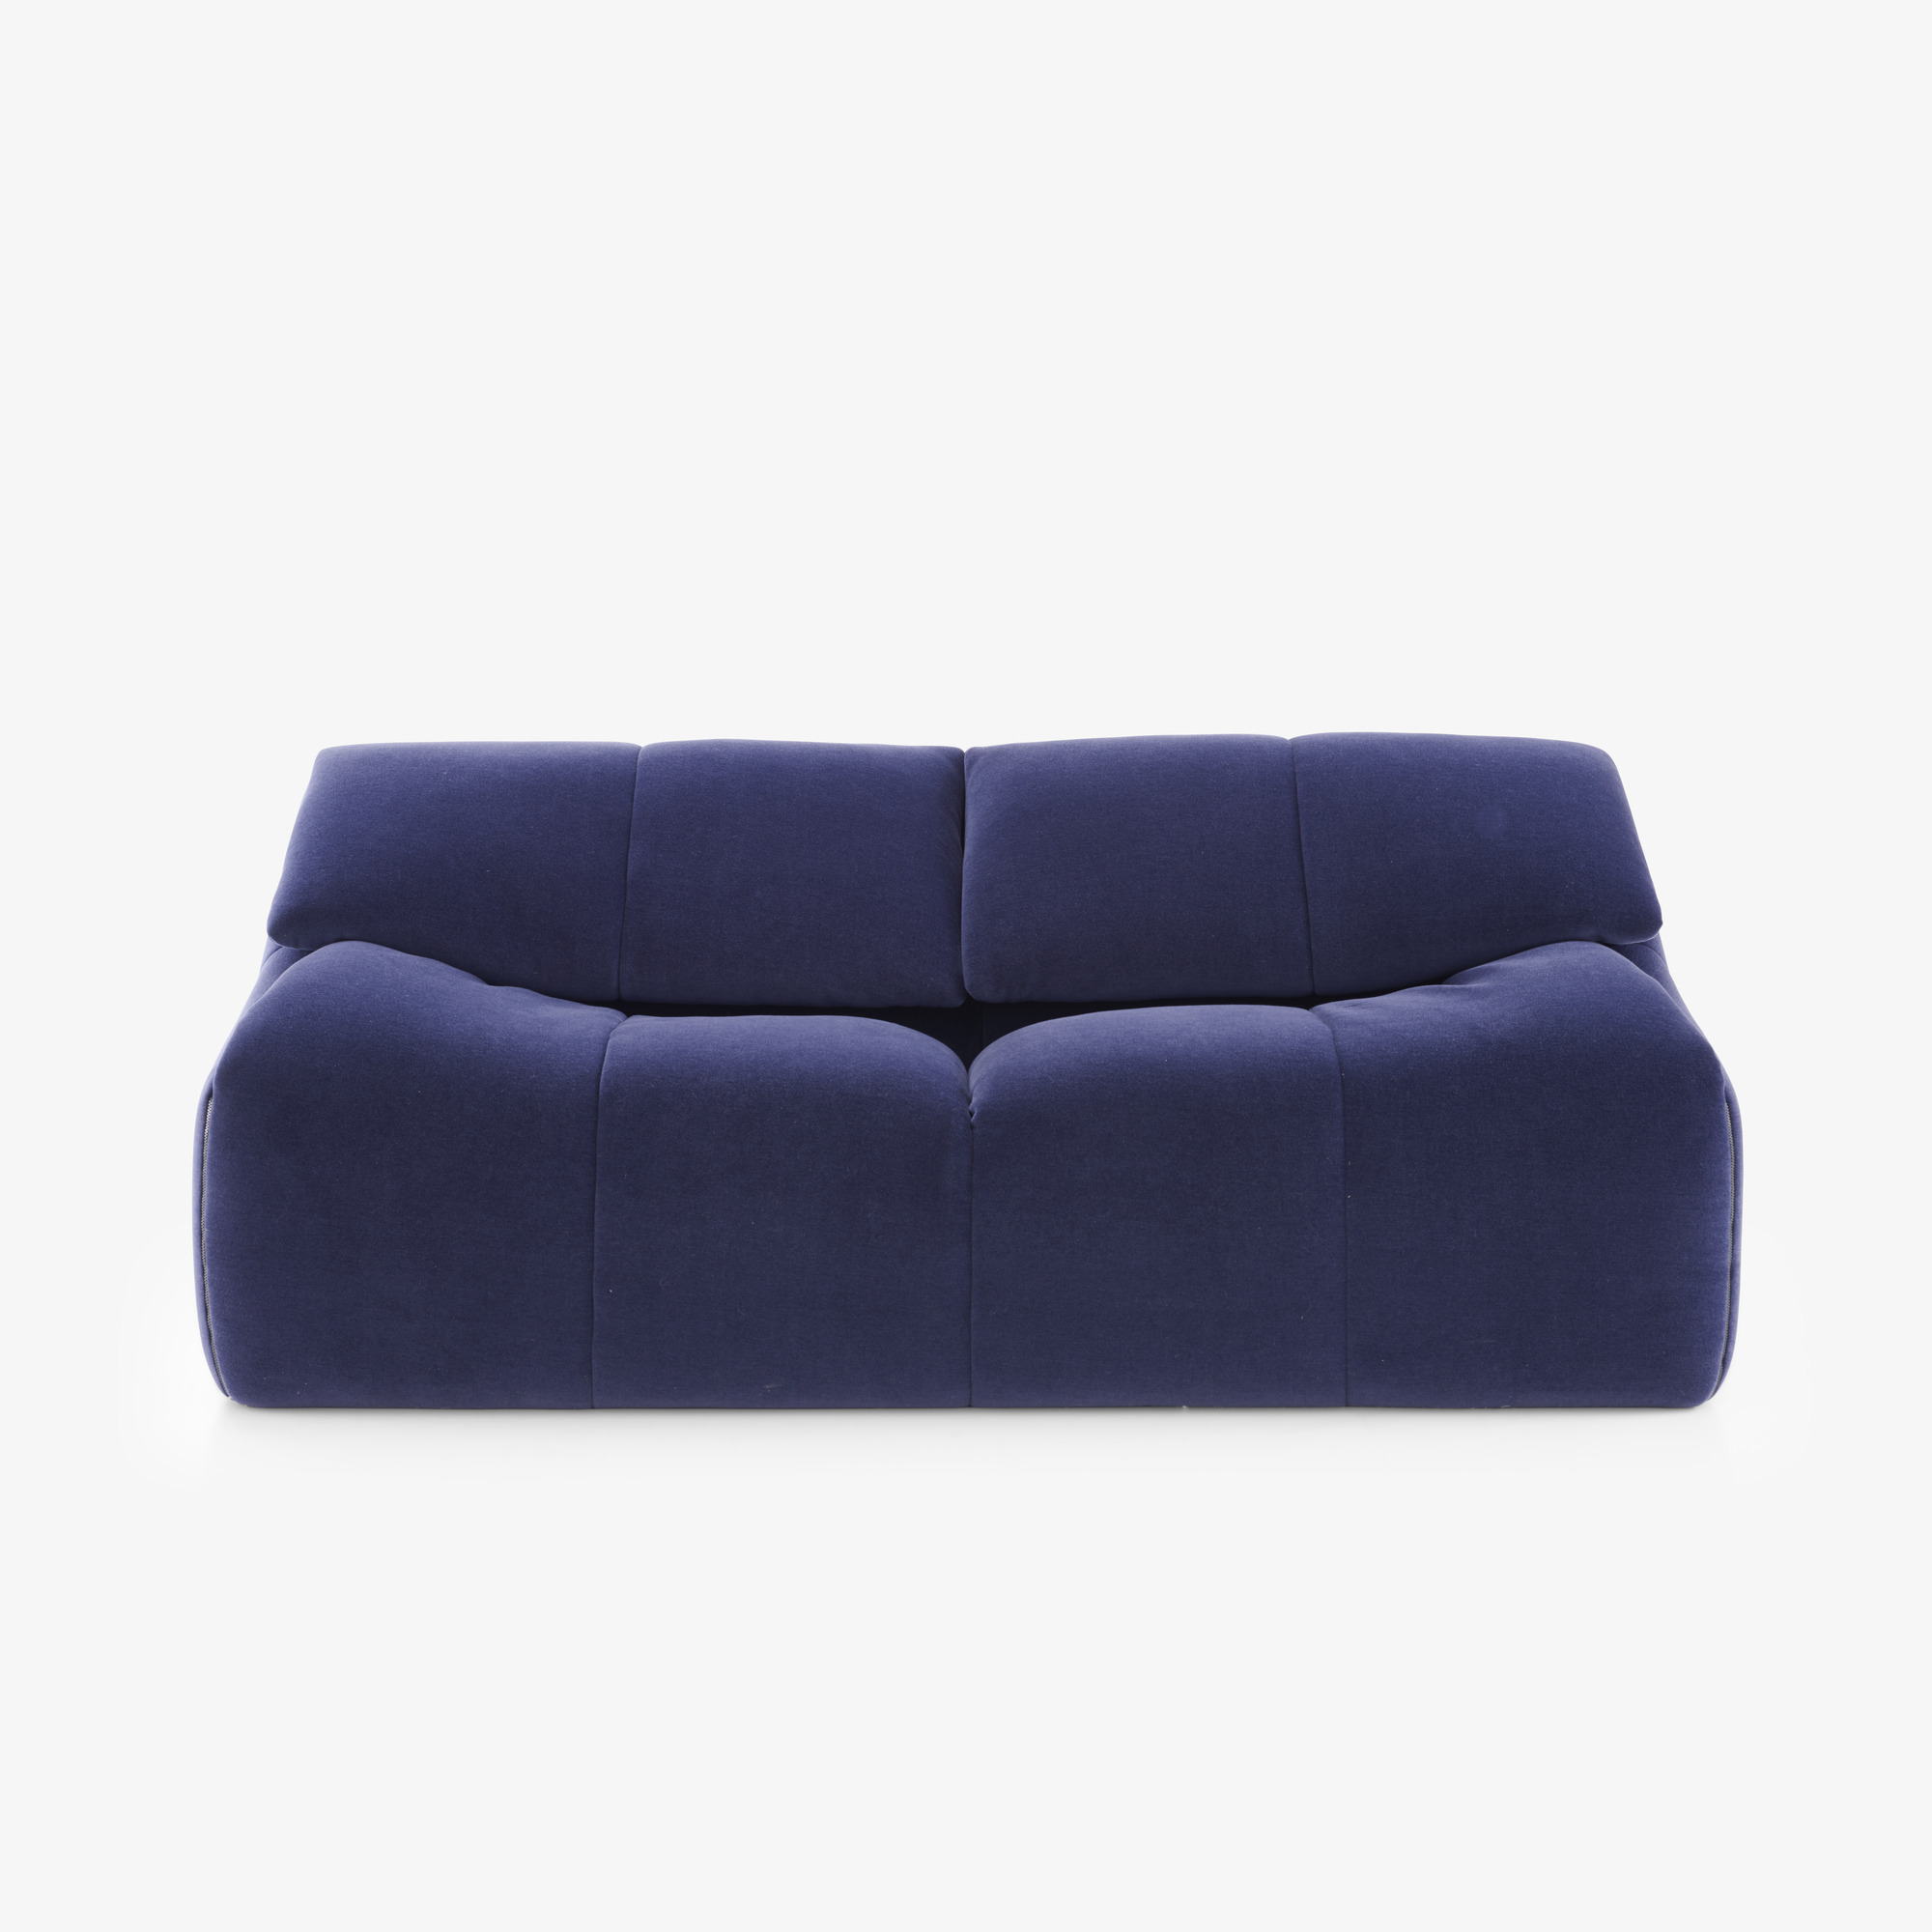 Image Medium sofa 1